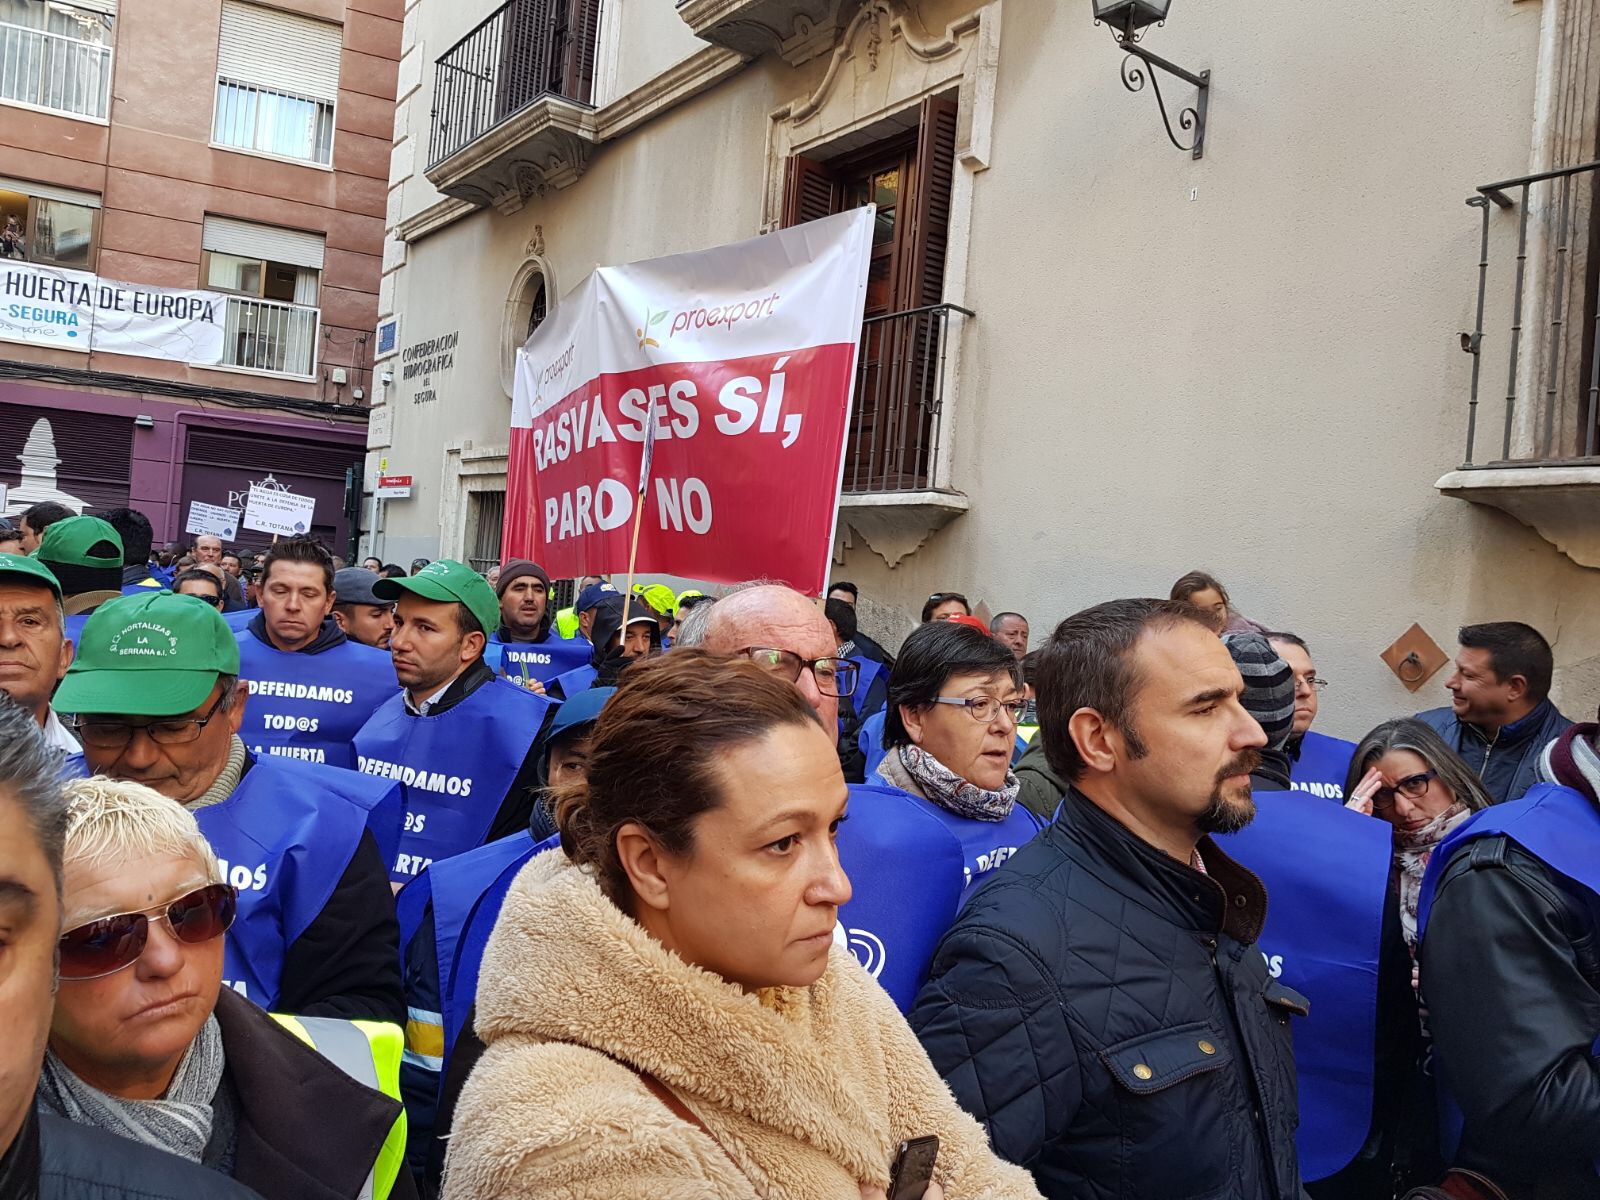 Los socialistas lorquinos presentes en la manifestación para reclamar medidas contra la sequía y en defensa de la huerta de Europa